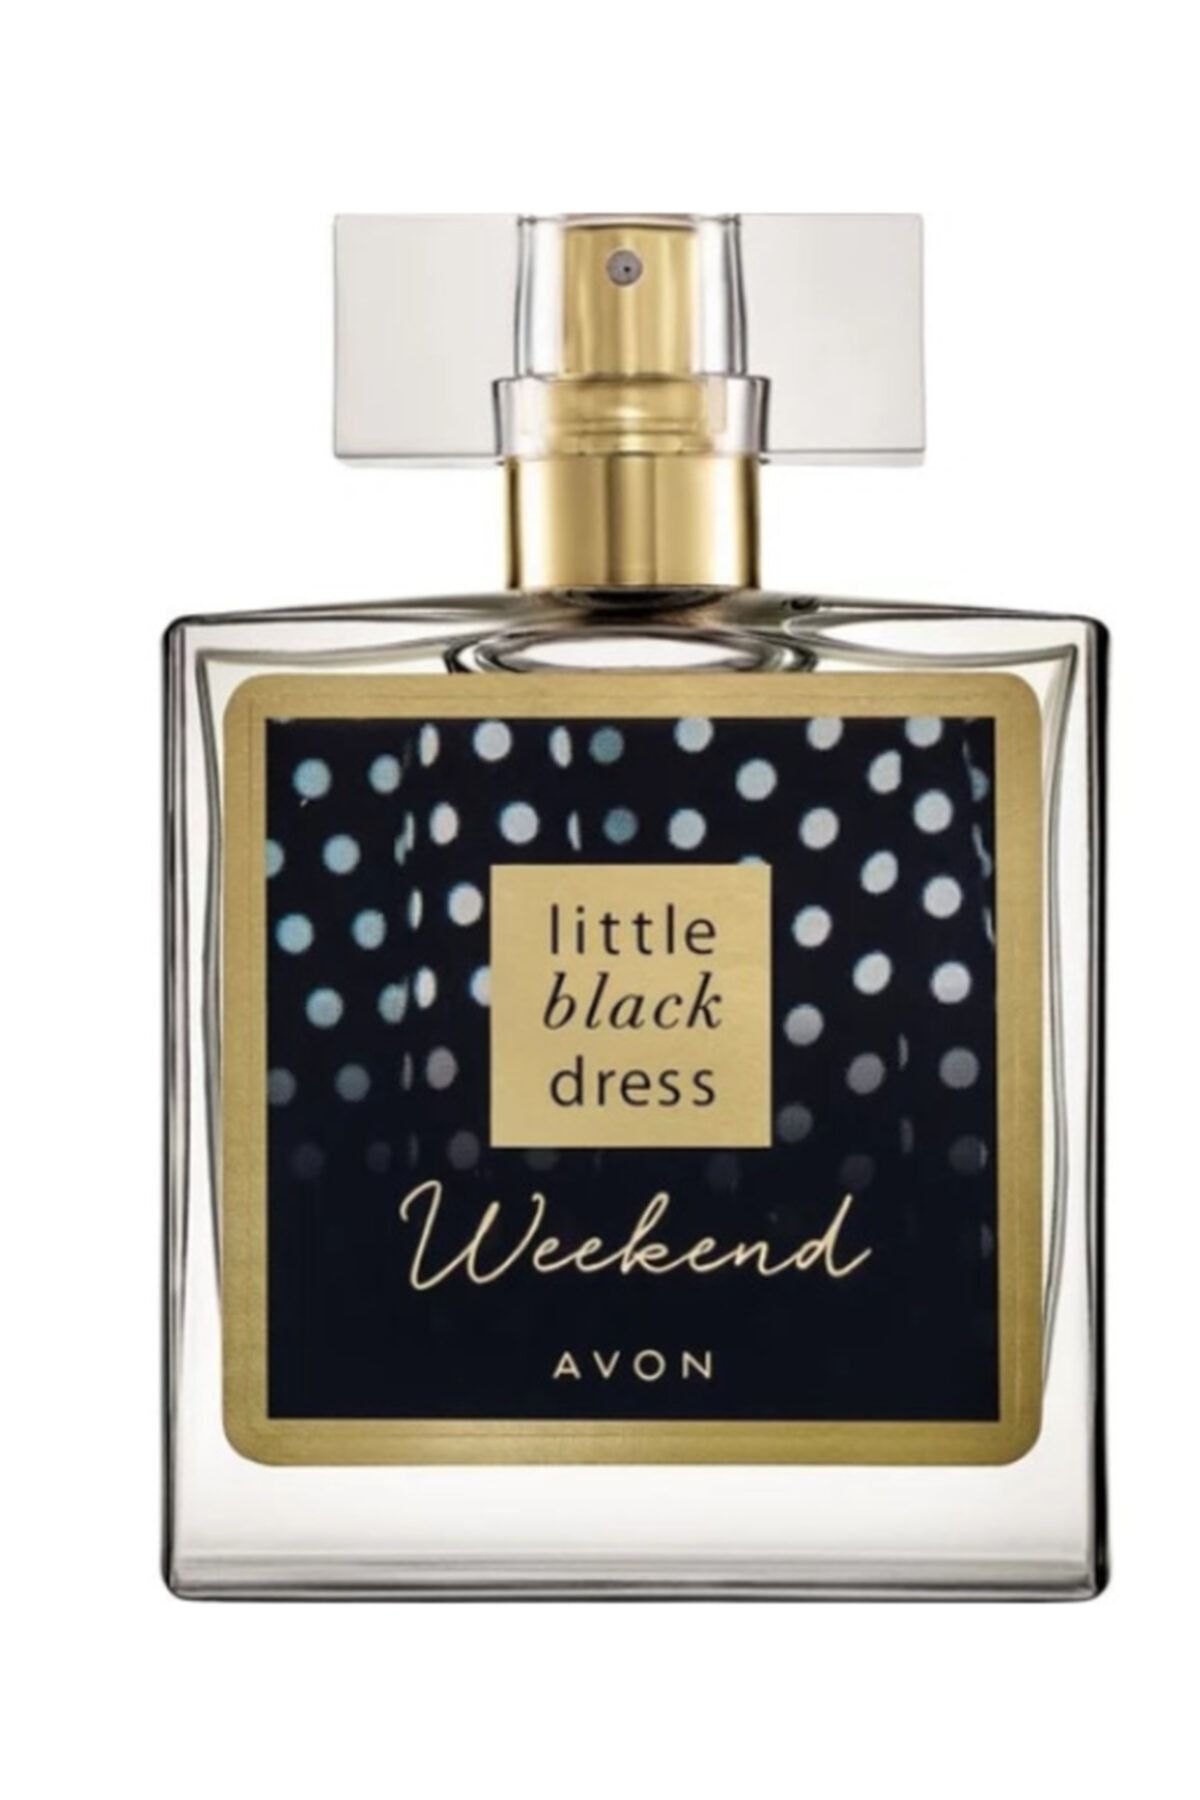 Avon عطر زنانه آون ویکند لباس سیاه کوچک 50 میلی لیتر